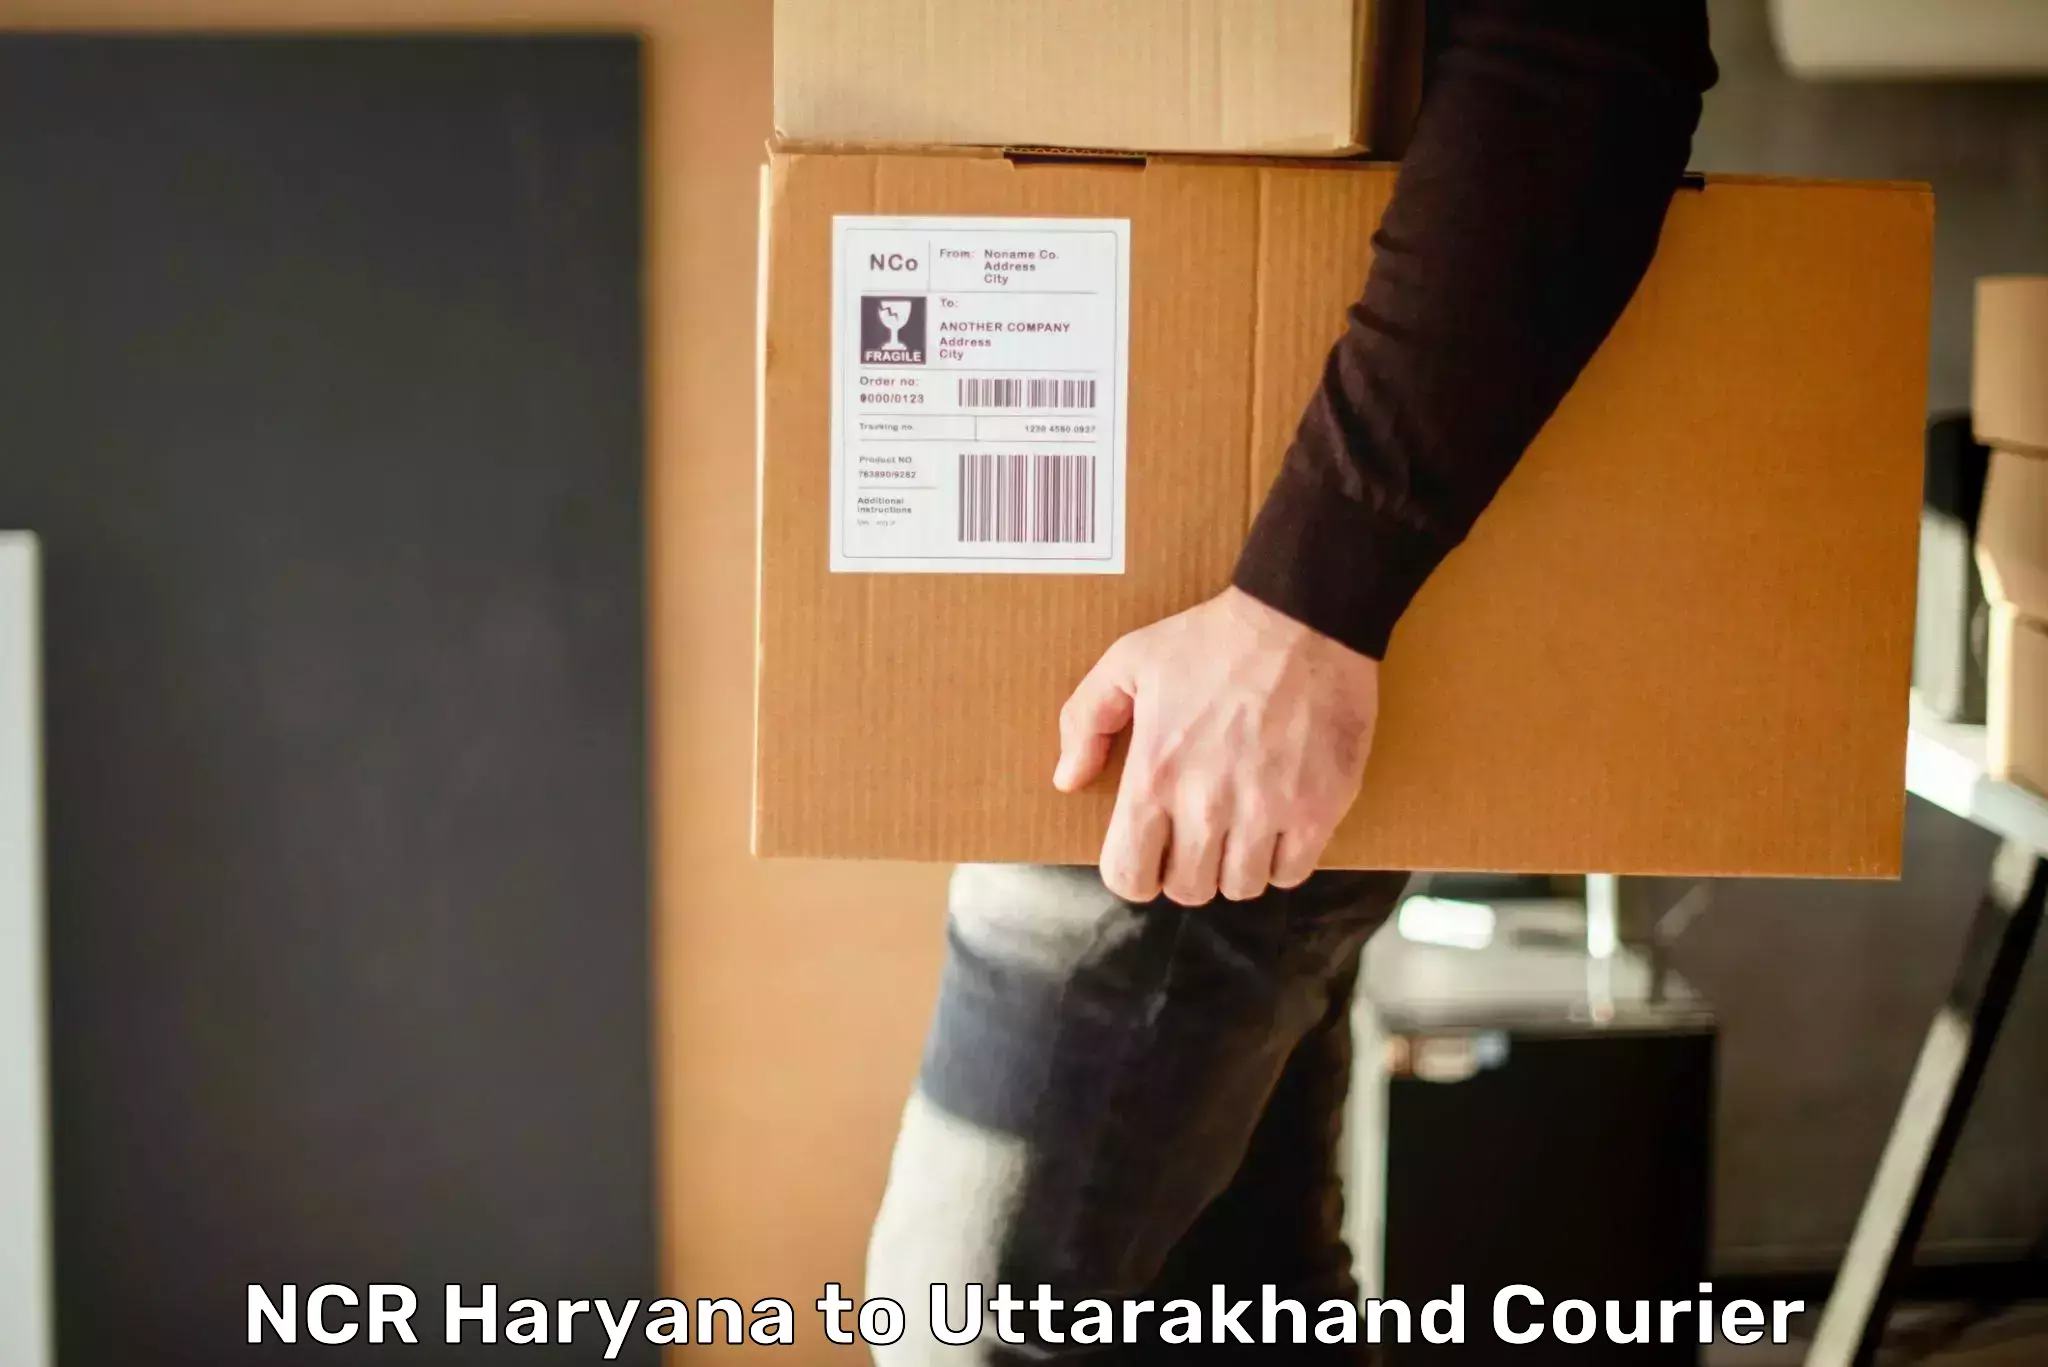 Customer-focused courier in NCR Haryana to Uttarakhand